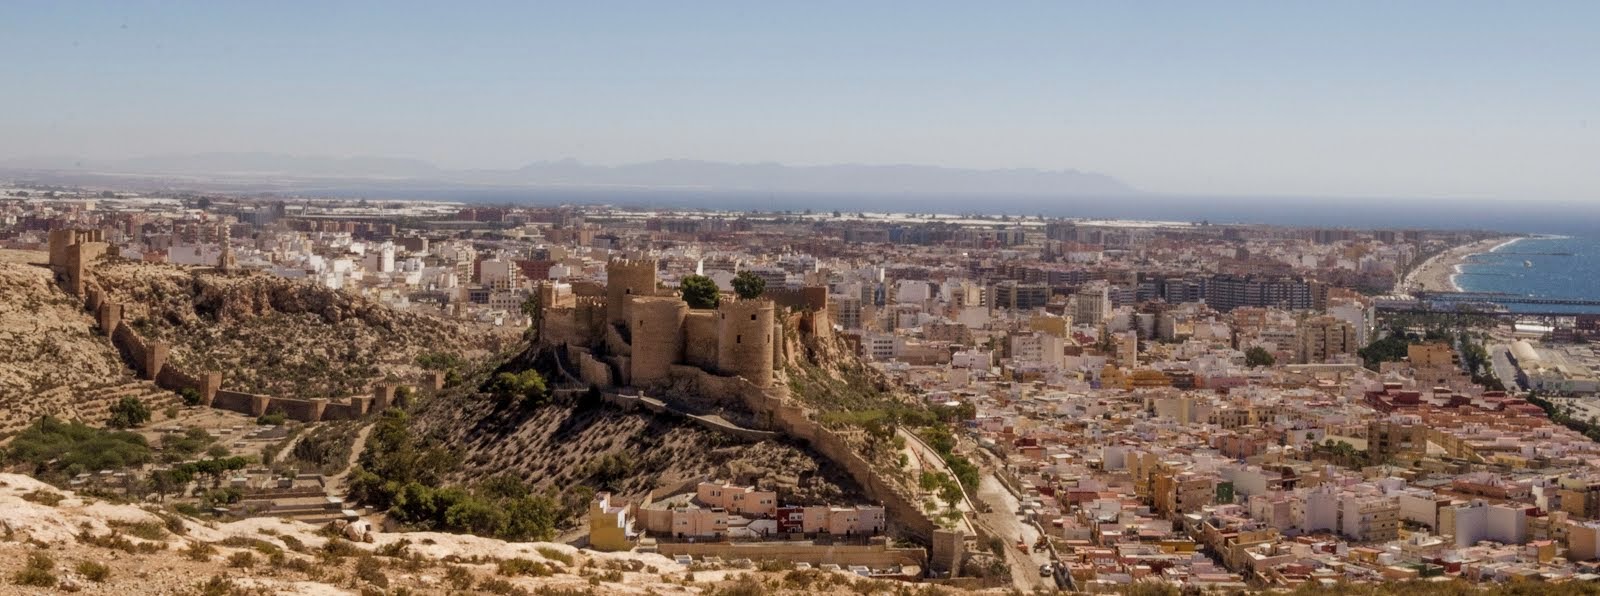 Alcazaba de Almería (Ruta de las palomas)